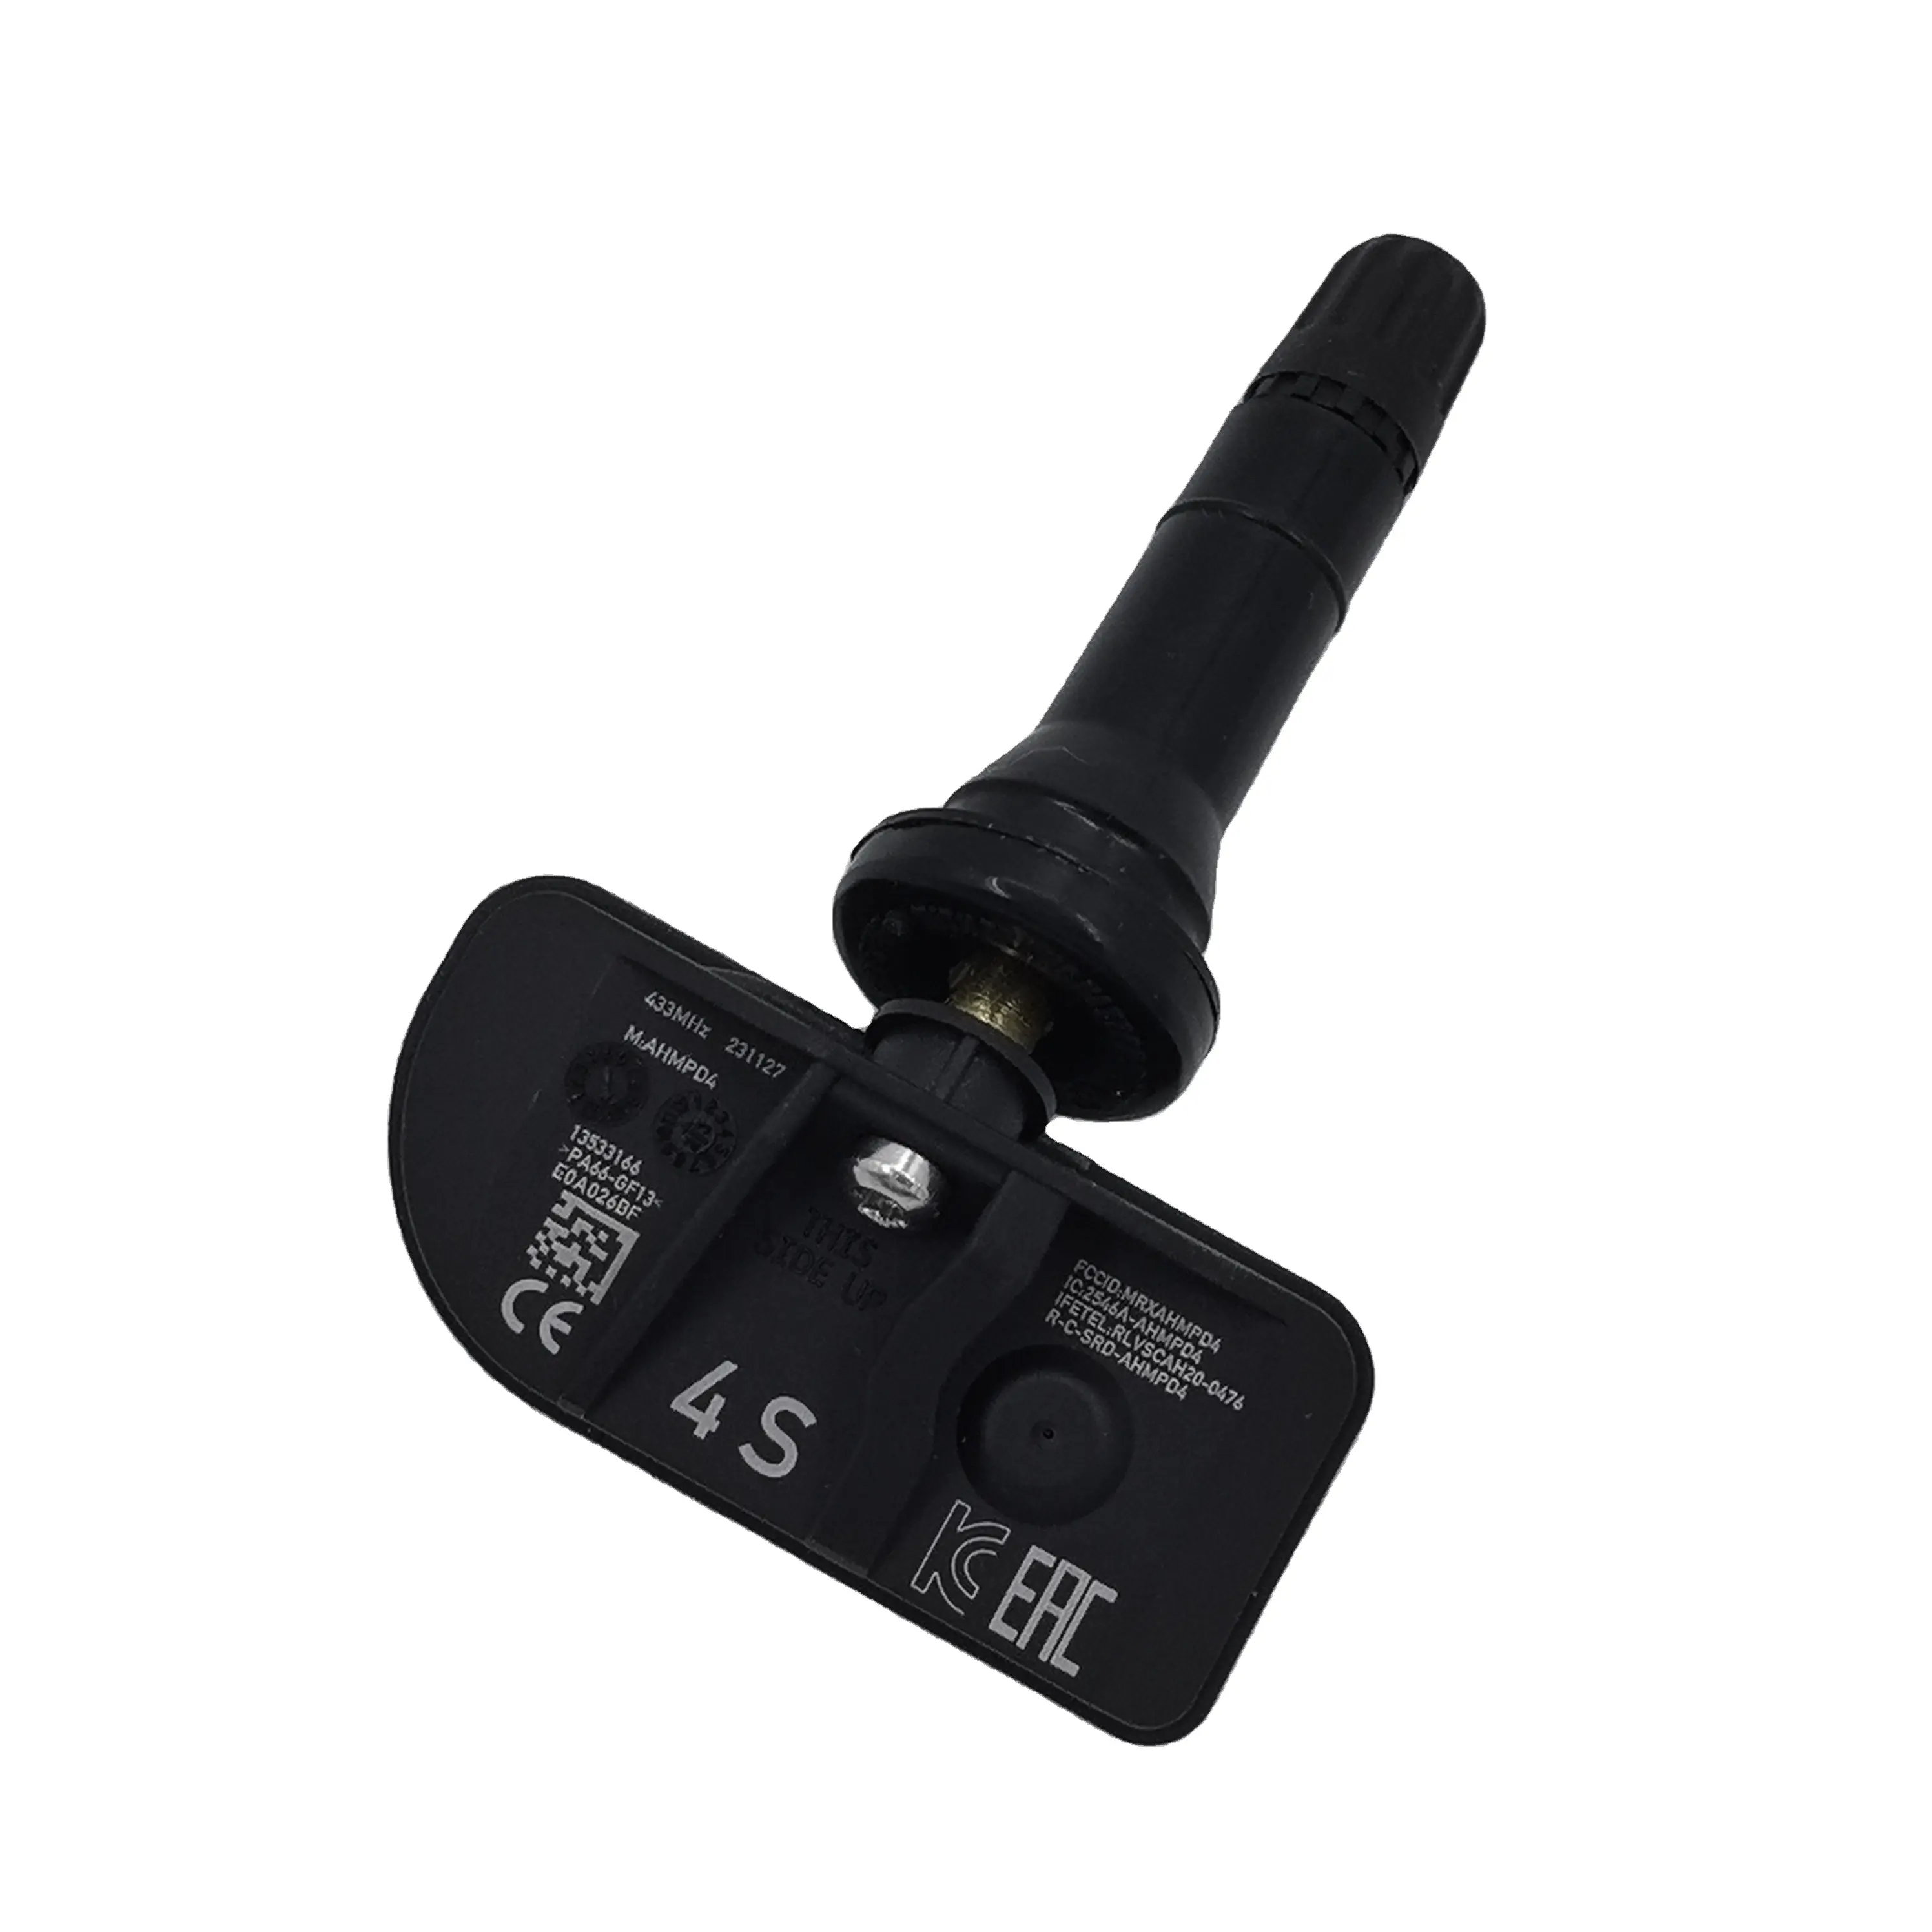 Sensore OEM sistema di monitoraggio pressione pneumatici sensore Chevrolet sensore OE 13542523 13533166 29158